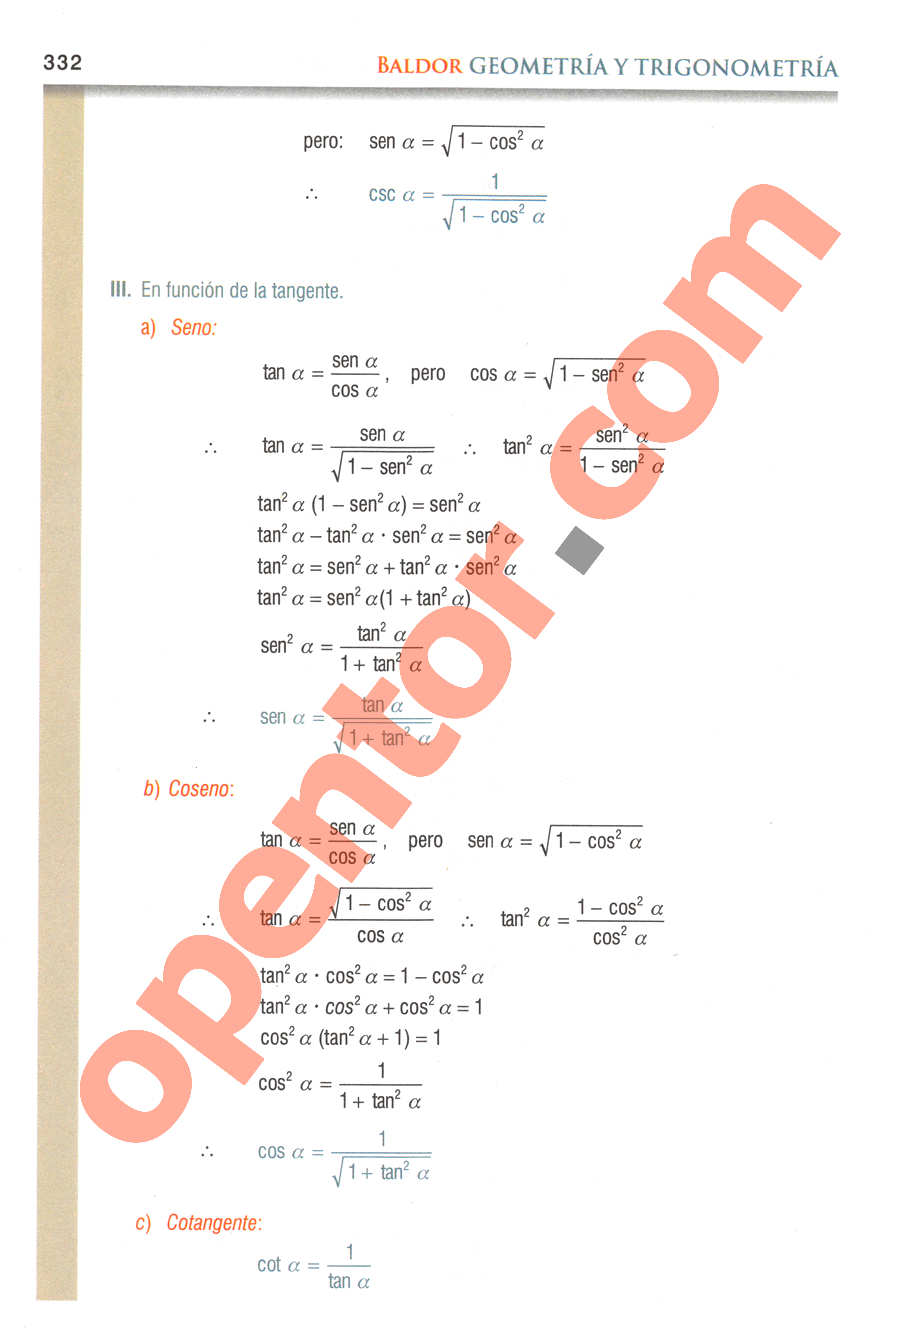 Geometría y Trigonometría de Baldor - Página 331